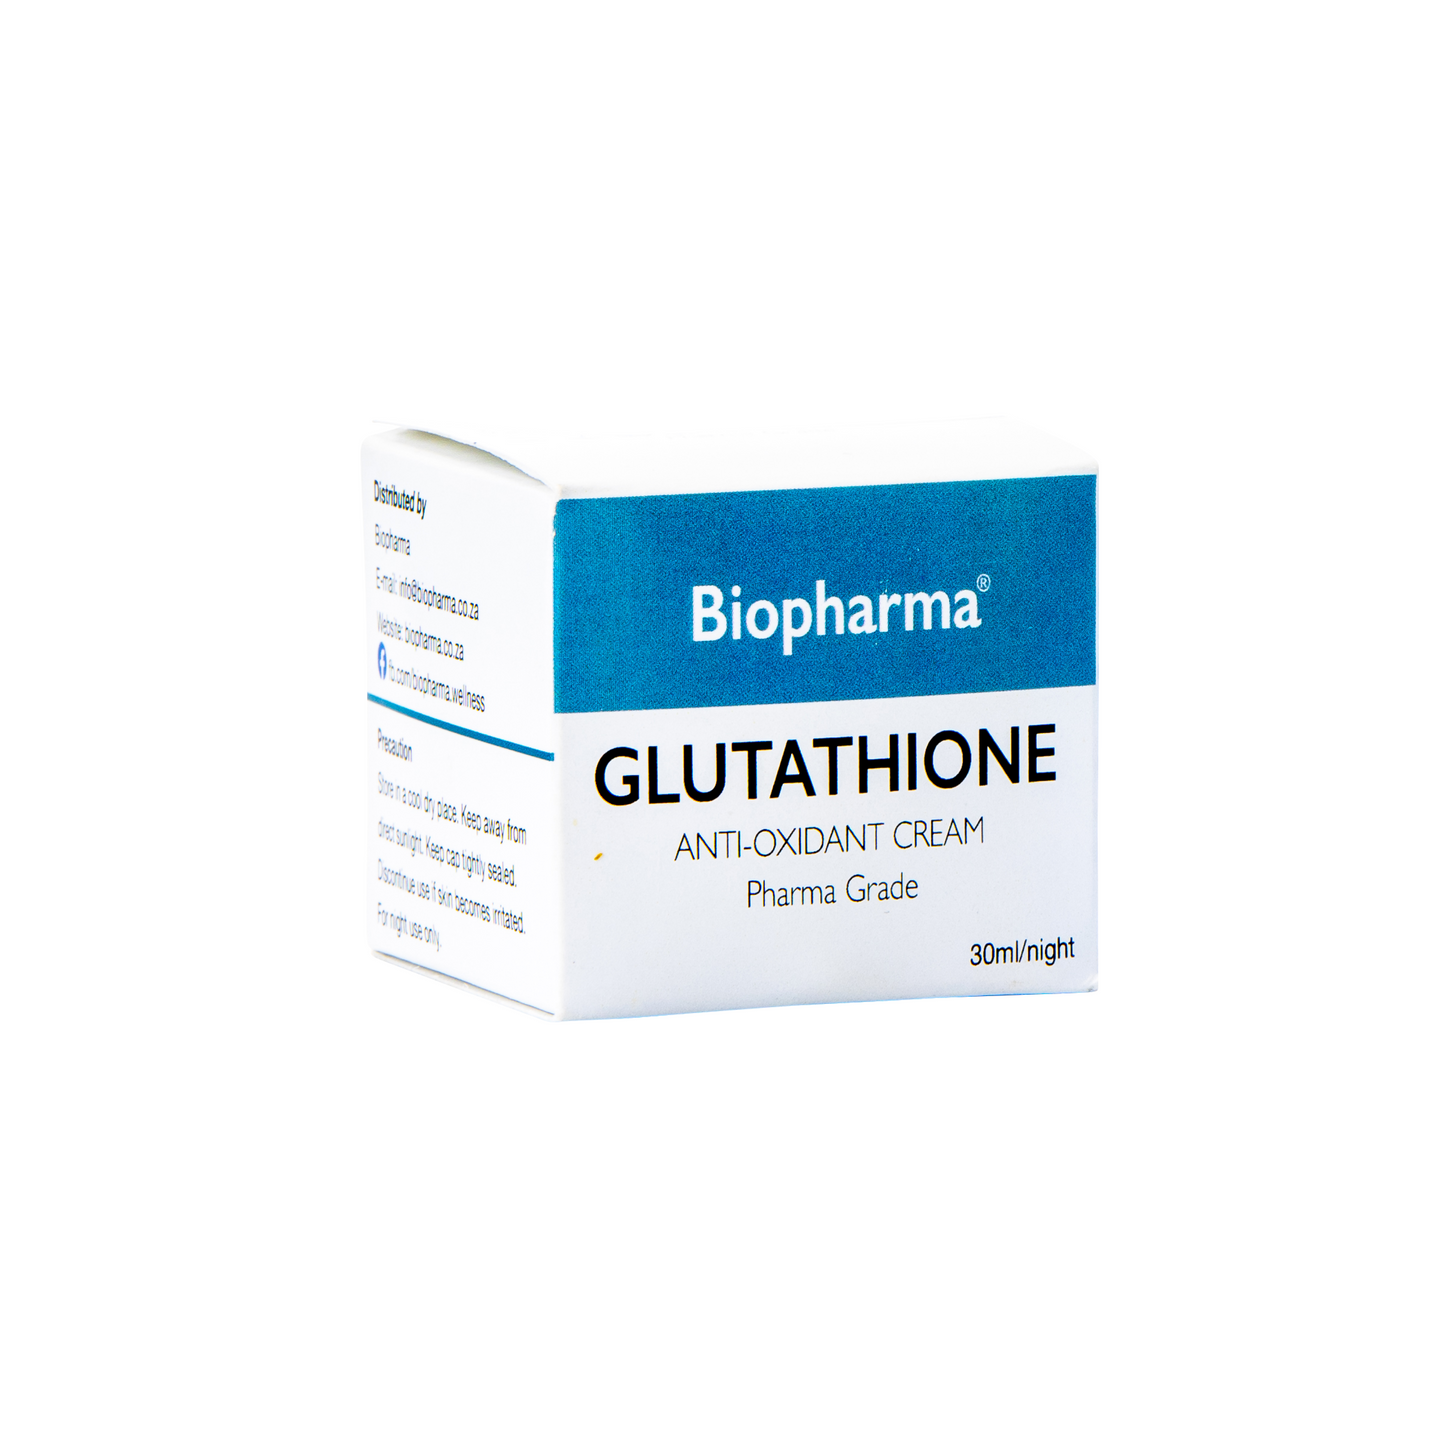 Biopharma Glutathione Anti-Oxidant Cream - 30ml